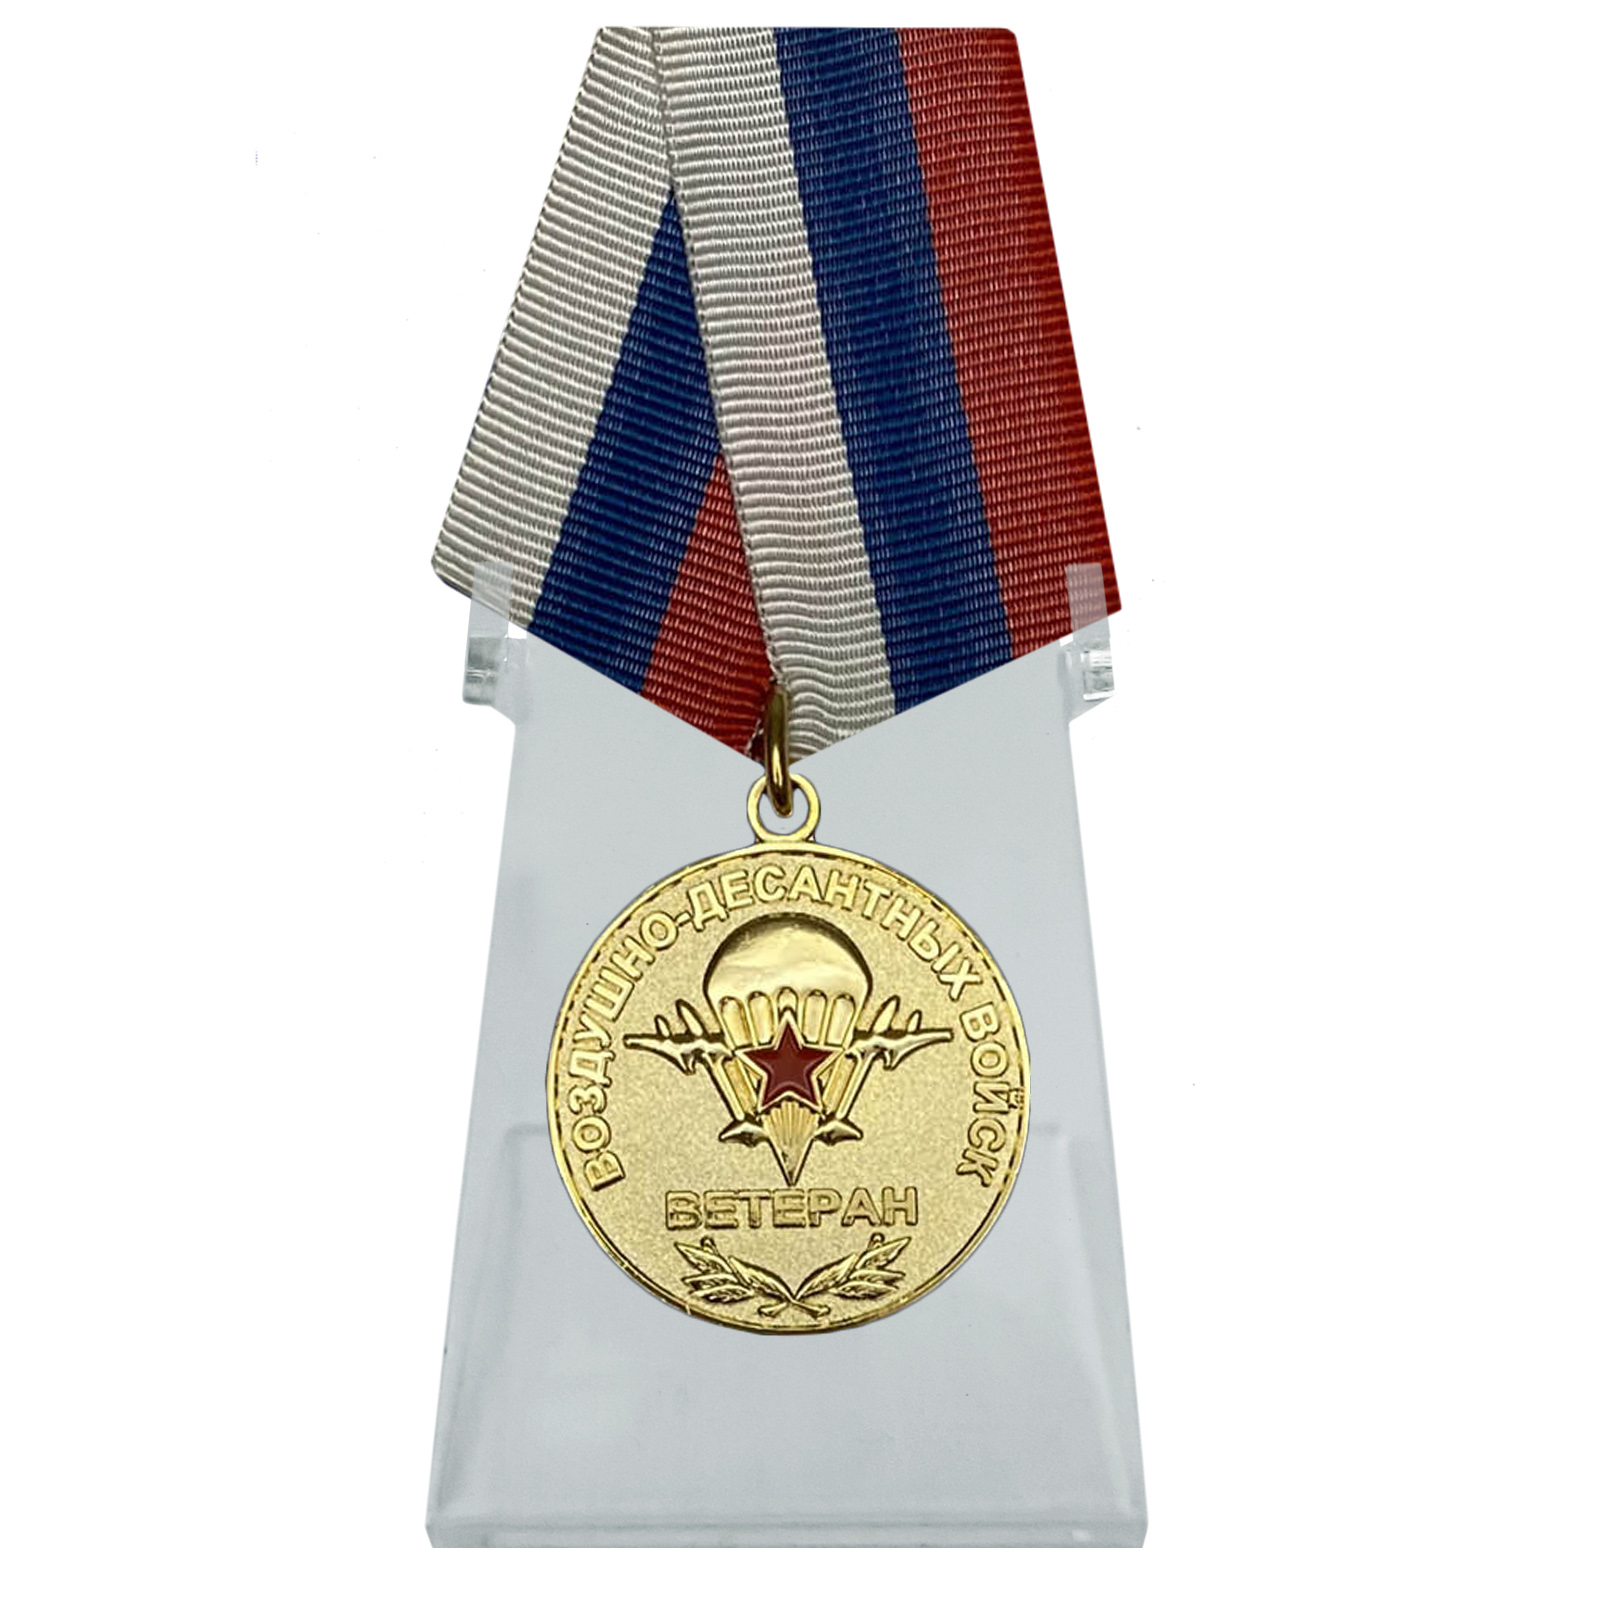 Купить медаль Ветеран Воздушно-десантных войск на подставке в подарок